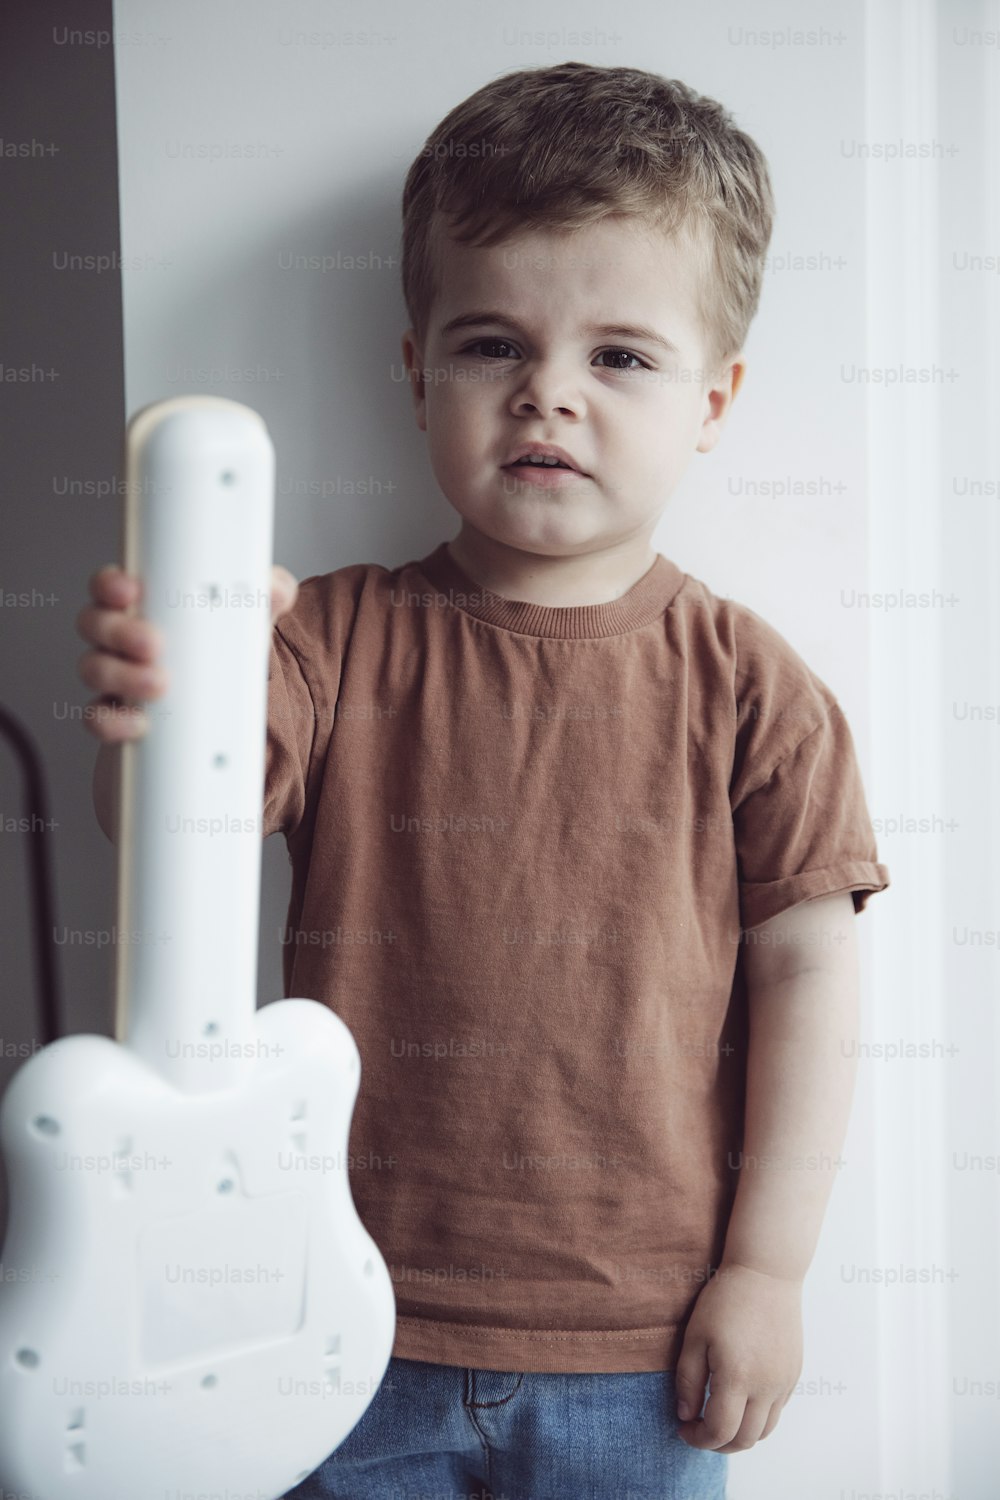 Ein kleiner Junge, der ein weißes gitarrenförmiges Objekt hält